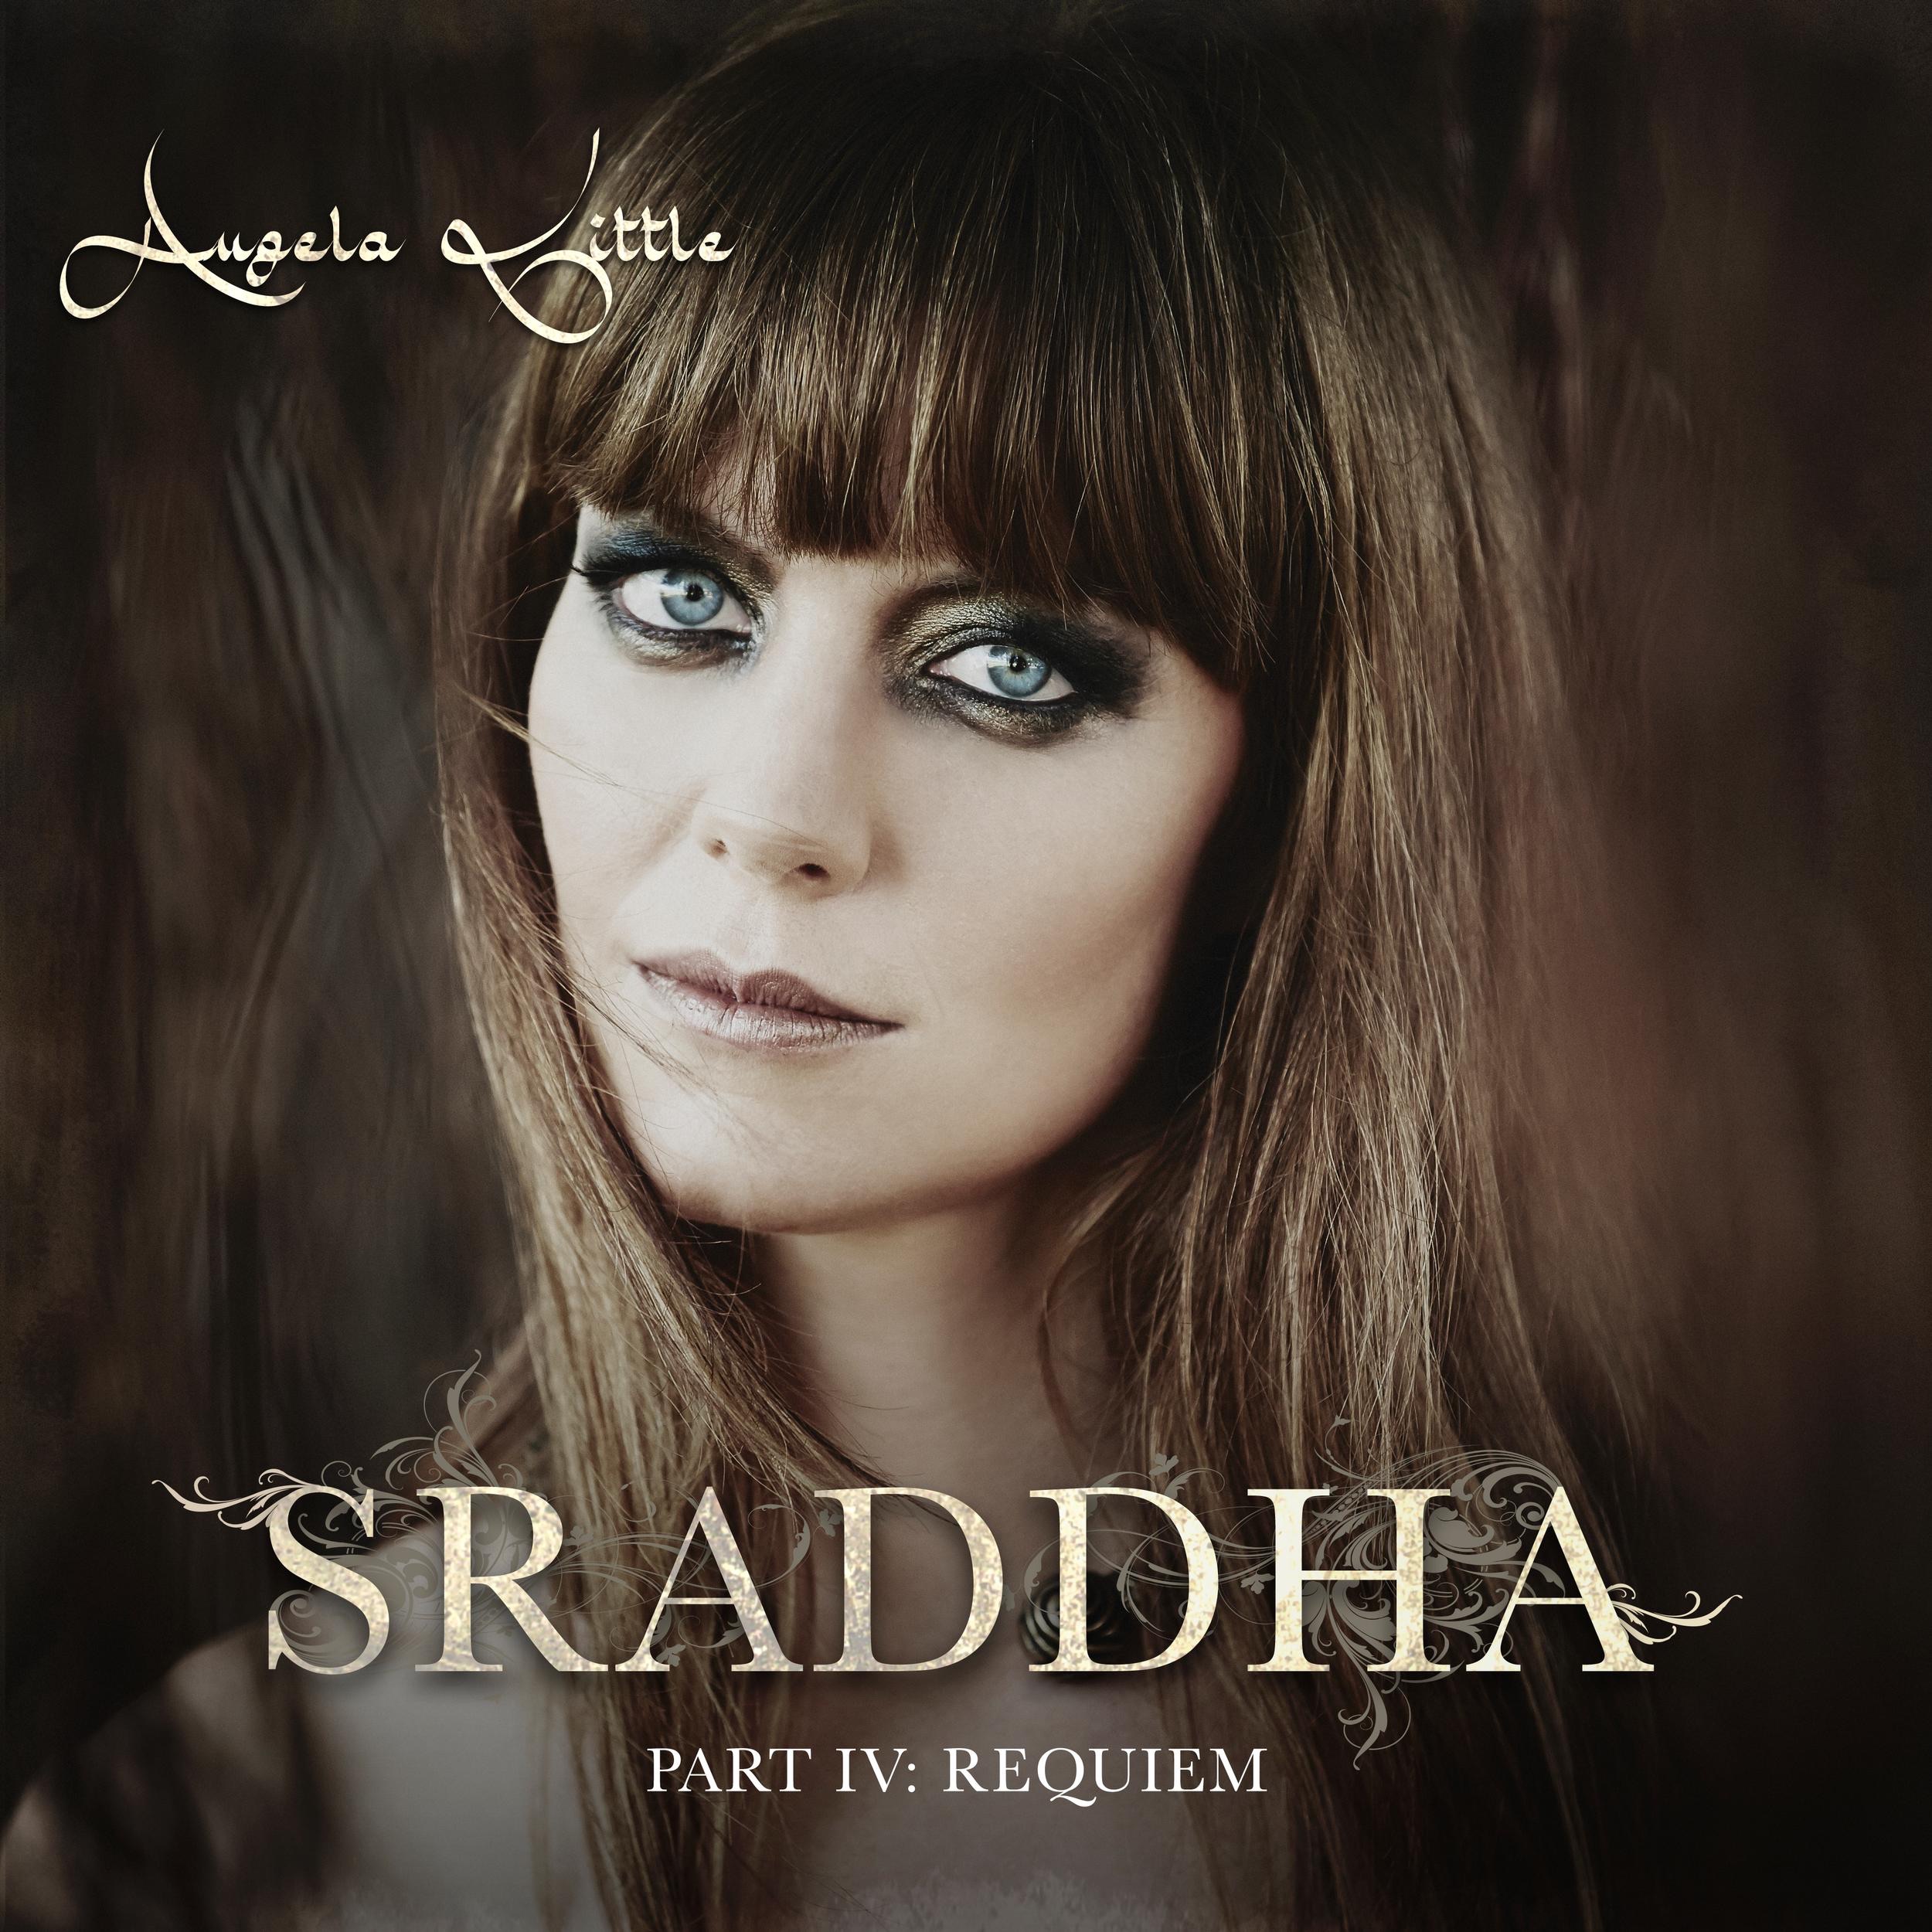 „SRADDHA: Part IV: Requiem - Single“ von <b>Angela Little</b> in iTunes - 2500x2500sr